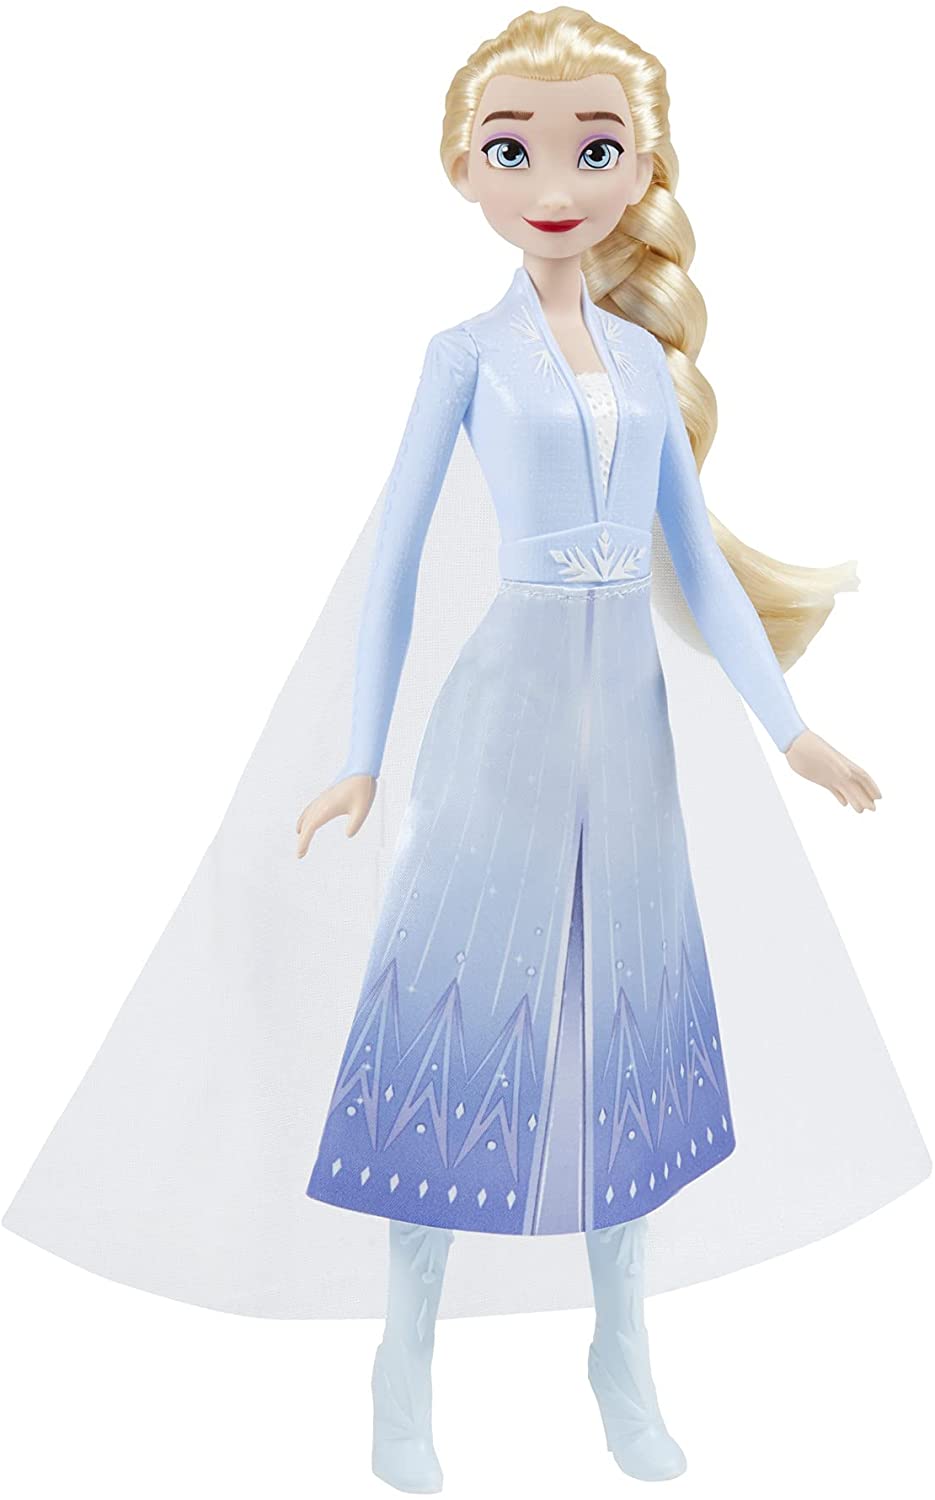 Disney F0796 2 Elsa Frozen Shimmer Muñeca de moda, falda, zapatos y cabello largo y rubio, juguete para niños de 3 años en adelante